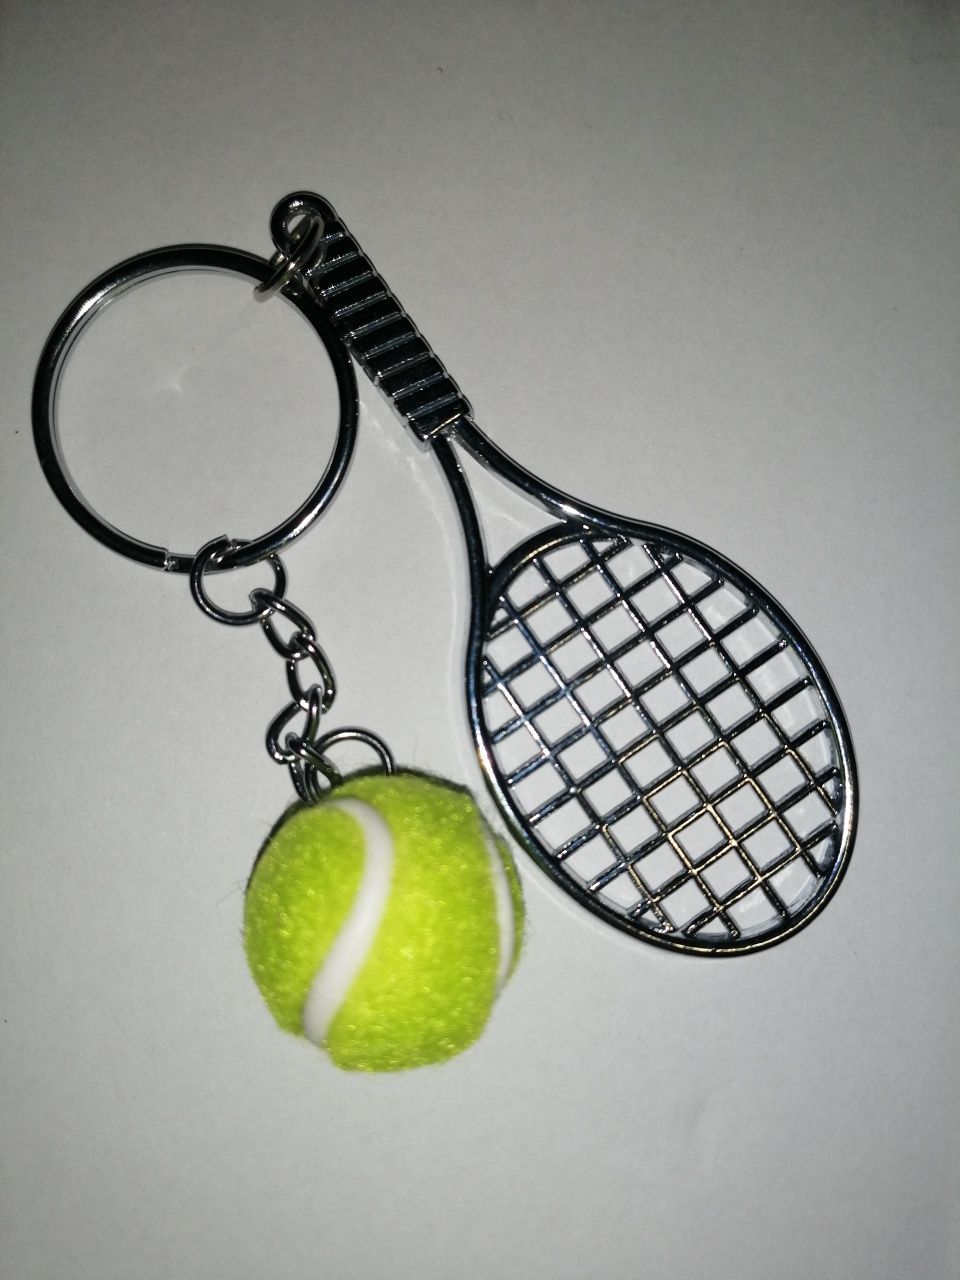 Tenis rakieta tenisowa piłka Wilson brelok breloczek